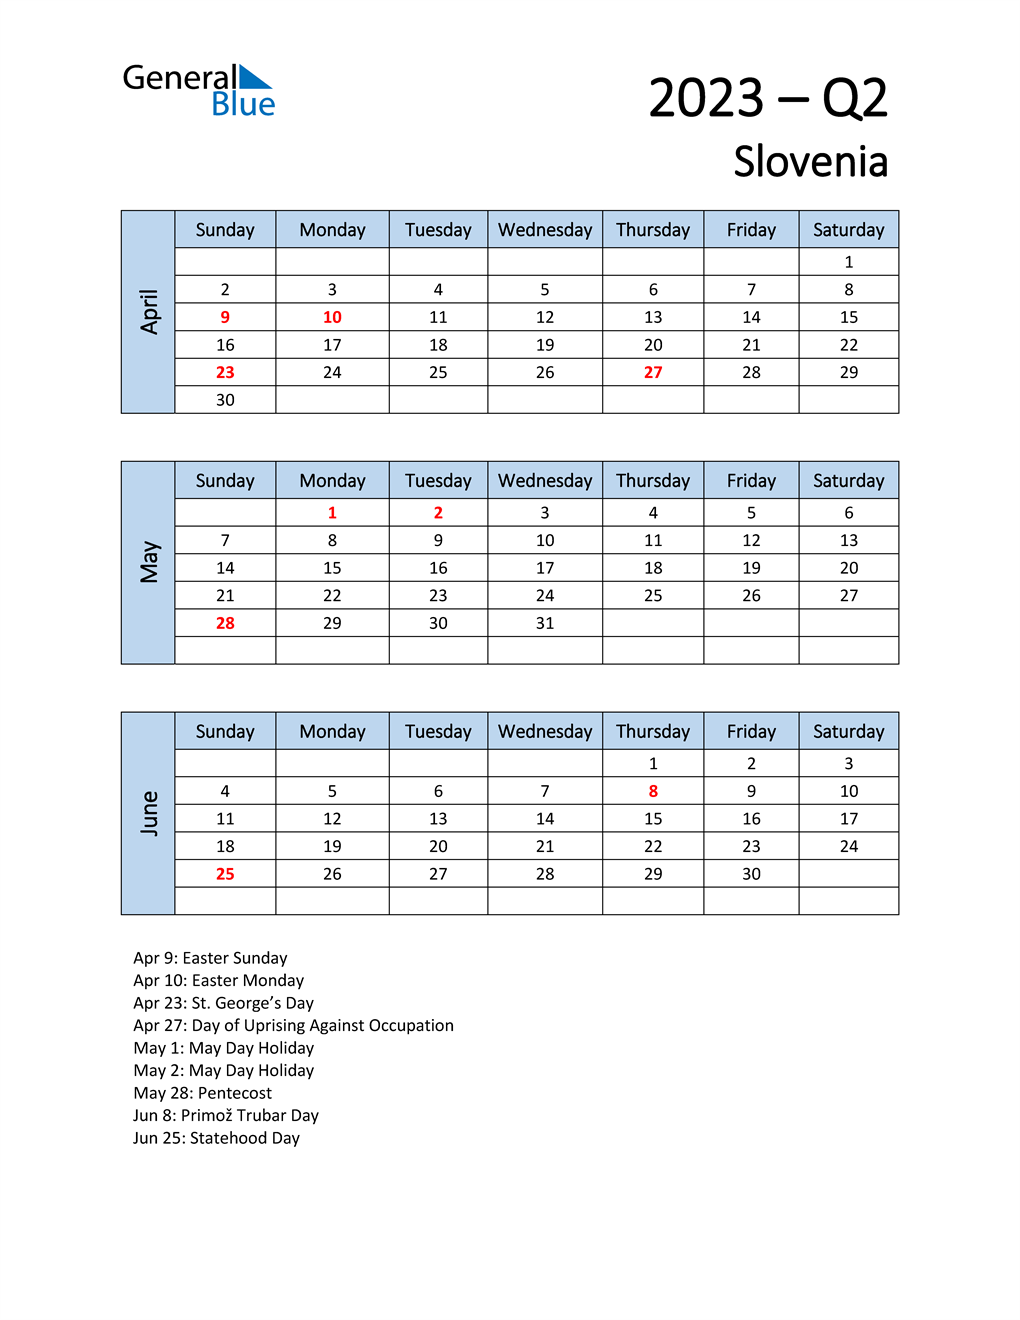  Free Q2 2023 Calendar for Slovenia